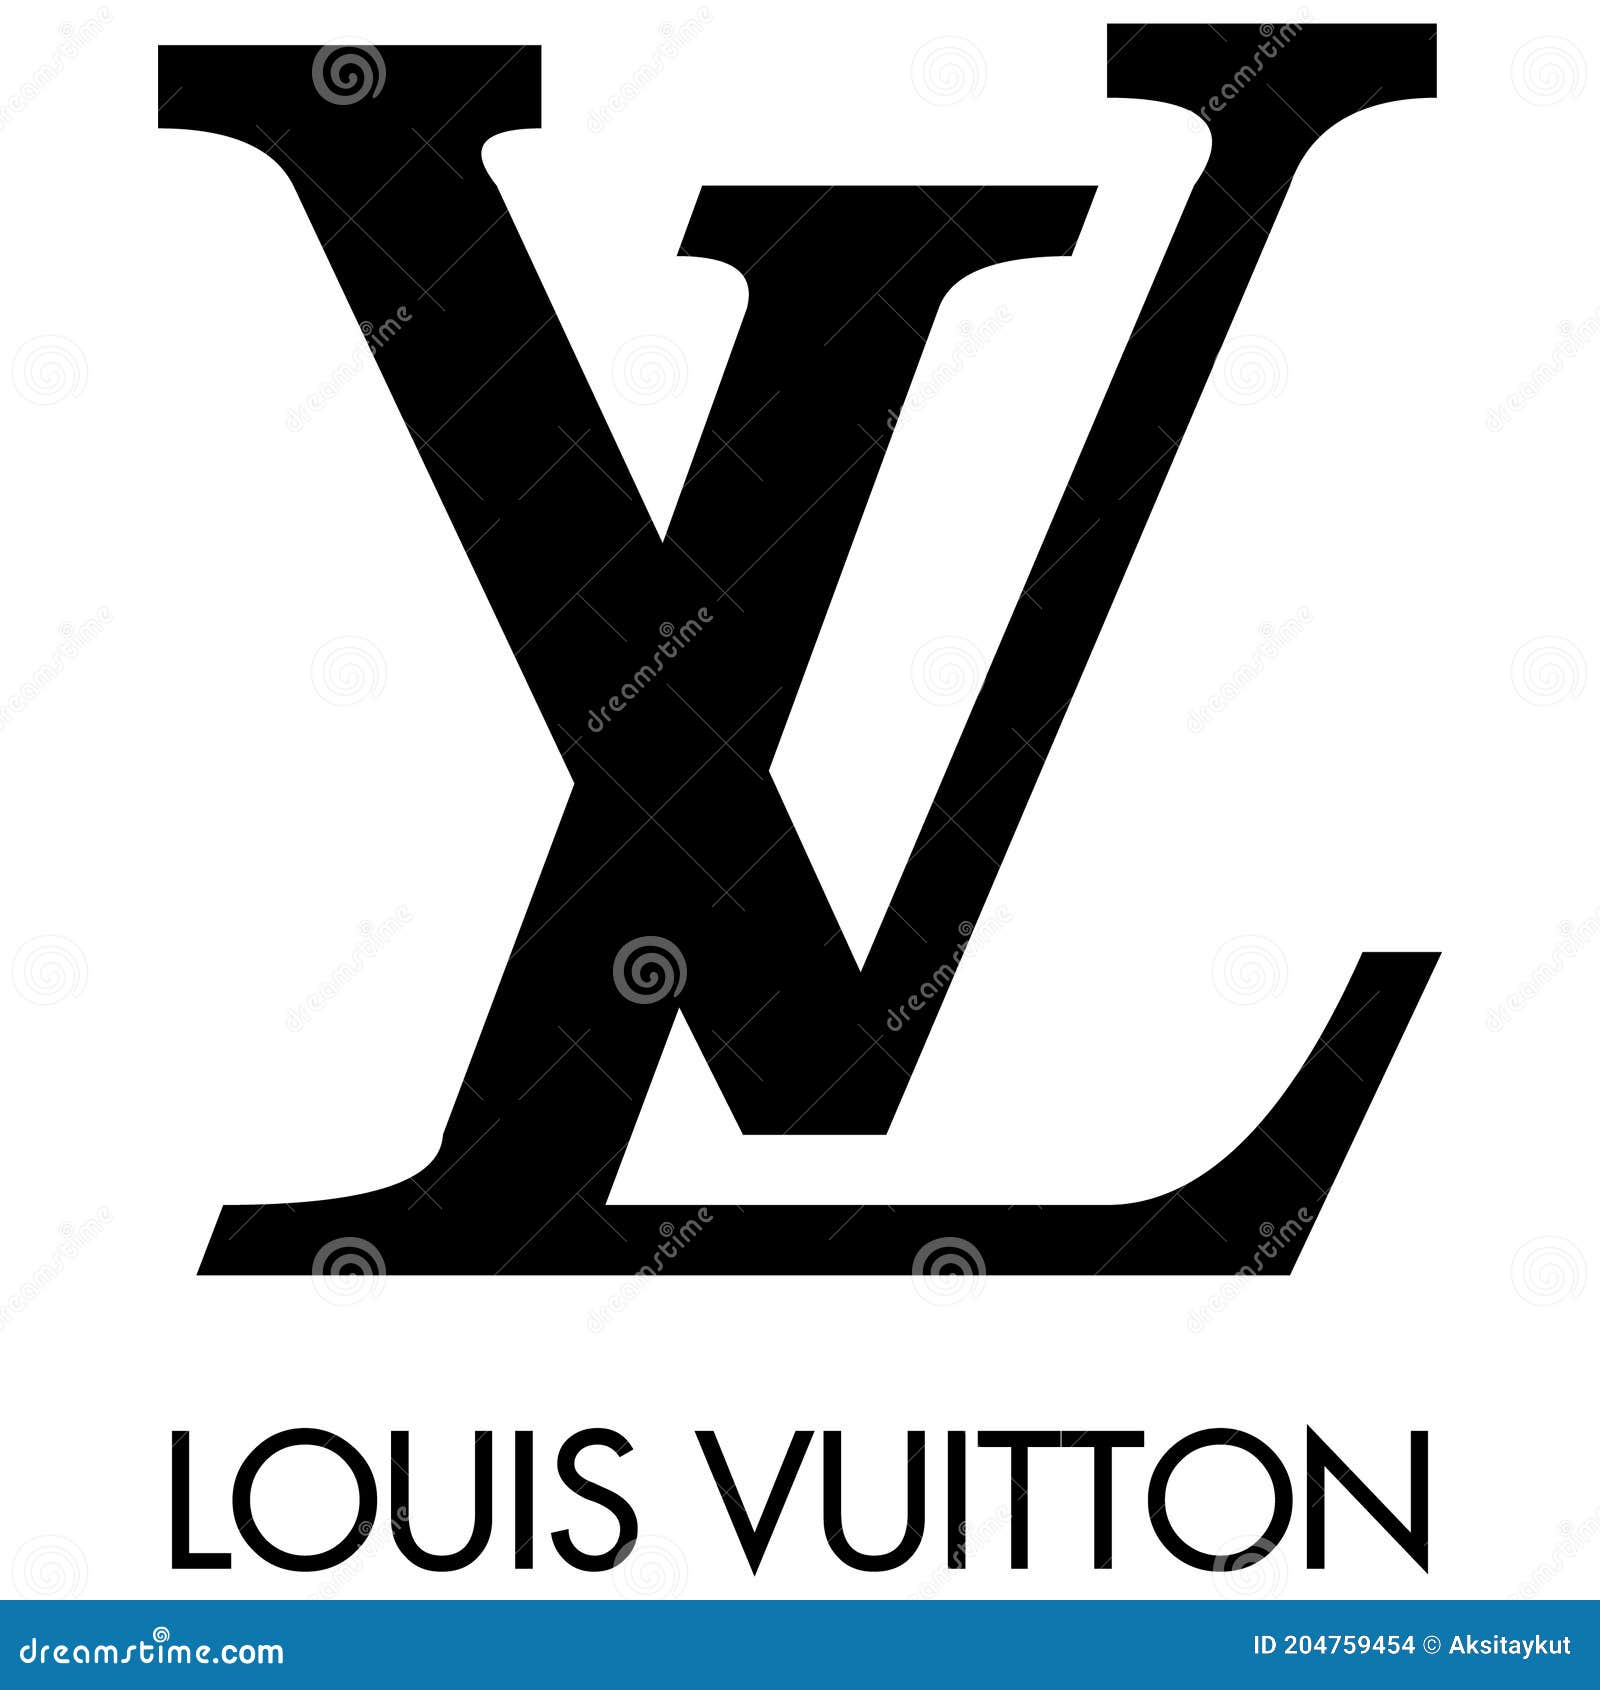 Louis Vuitton LBM Final, PDF, Luxury Goods